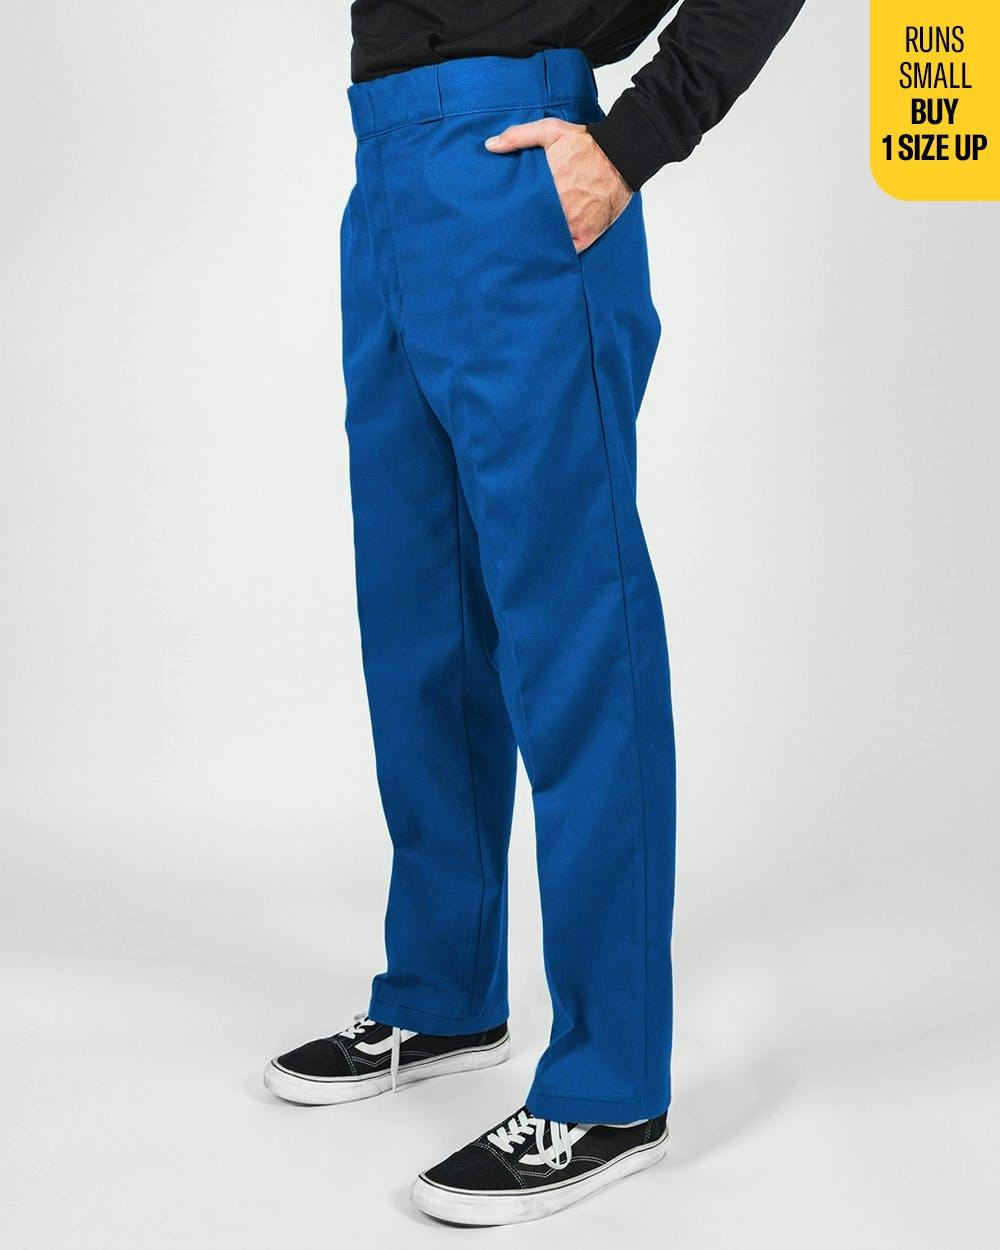 Dickies 874 Original Fit Navy Blue Work Pants Men's 50 x 30